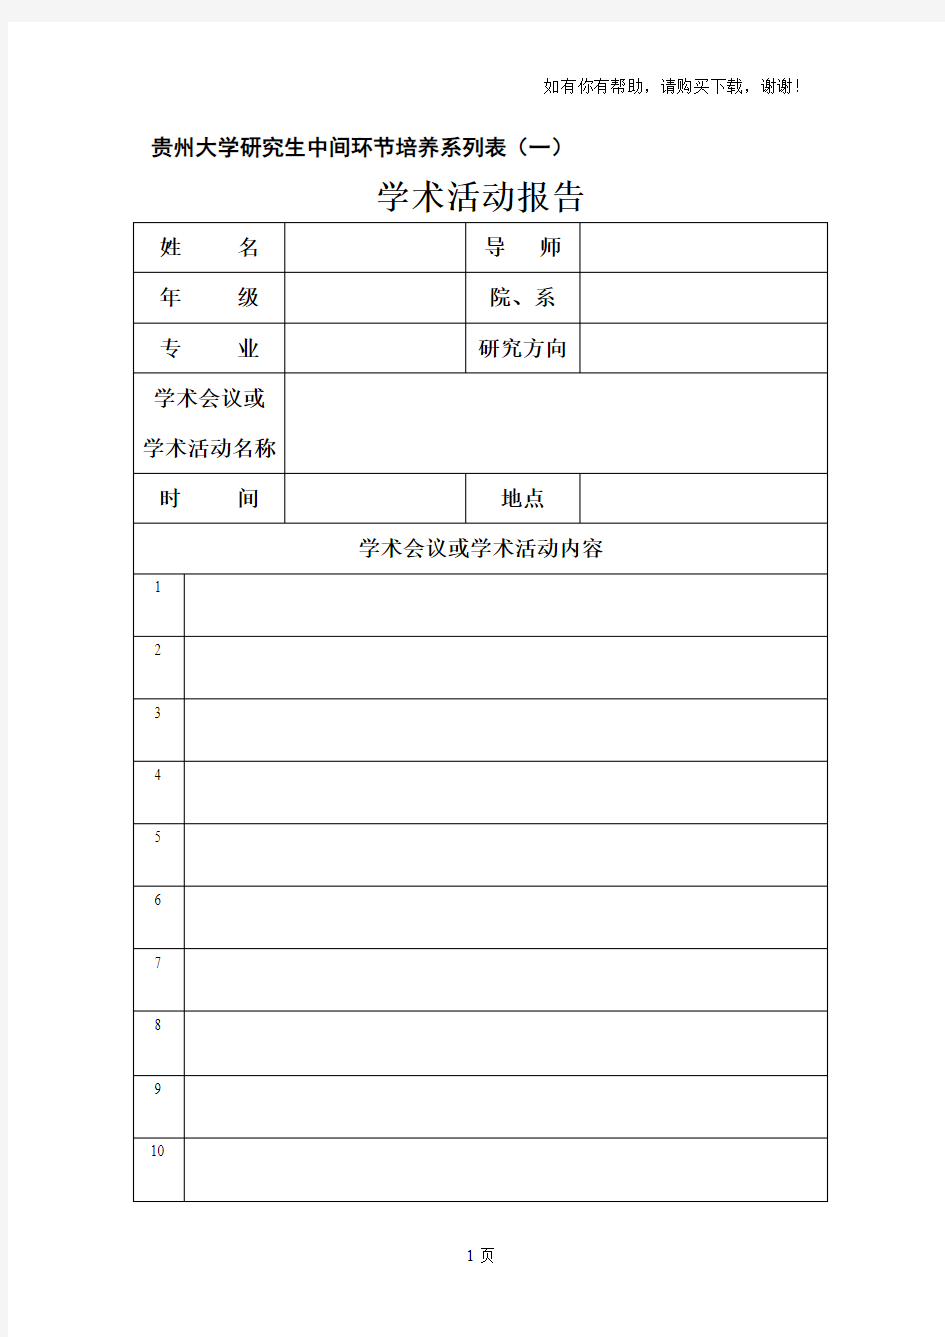 贵州大学研究生中间环节培养系列表一